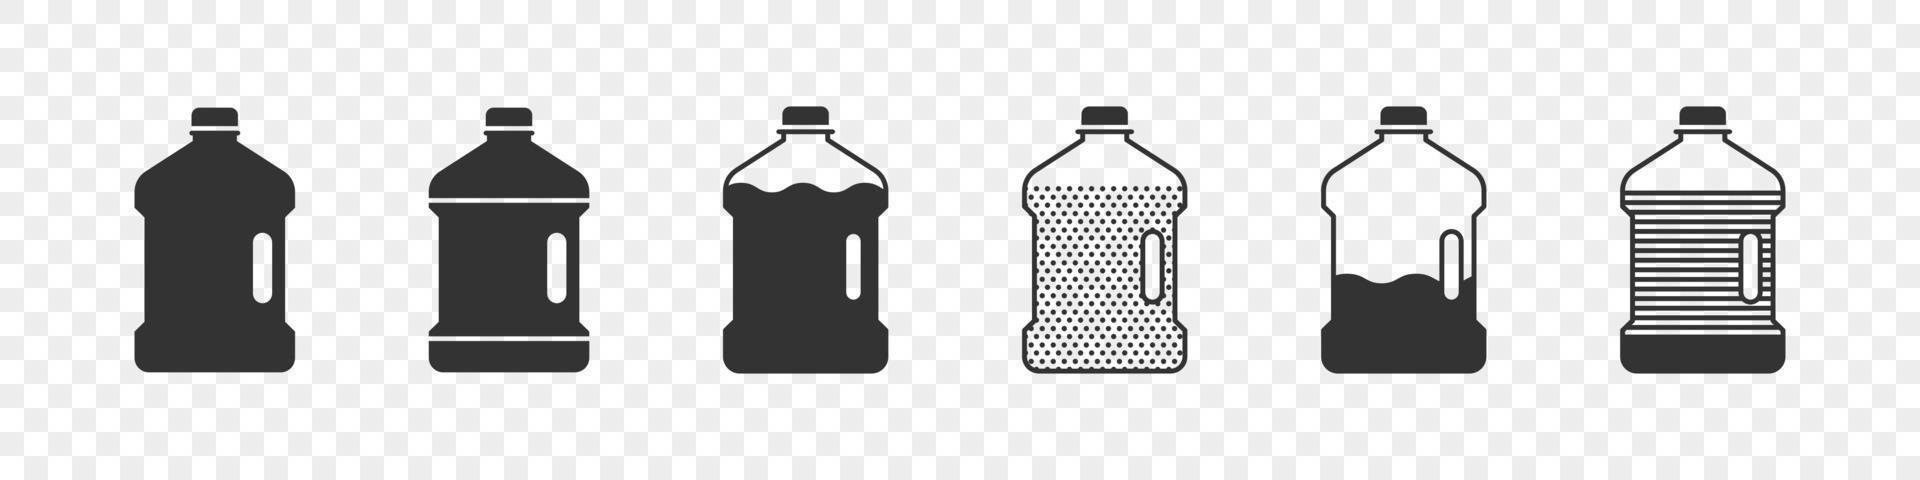 plastic flessen. silhouetten van flessen. concept vlak flessen pictogrammen. vector illustratie